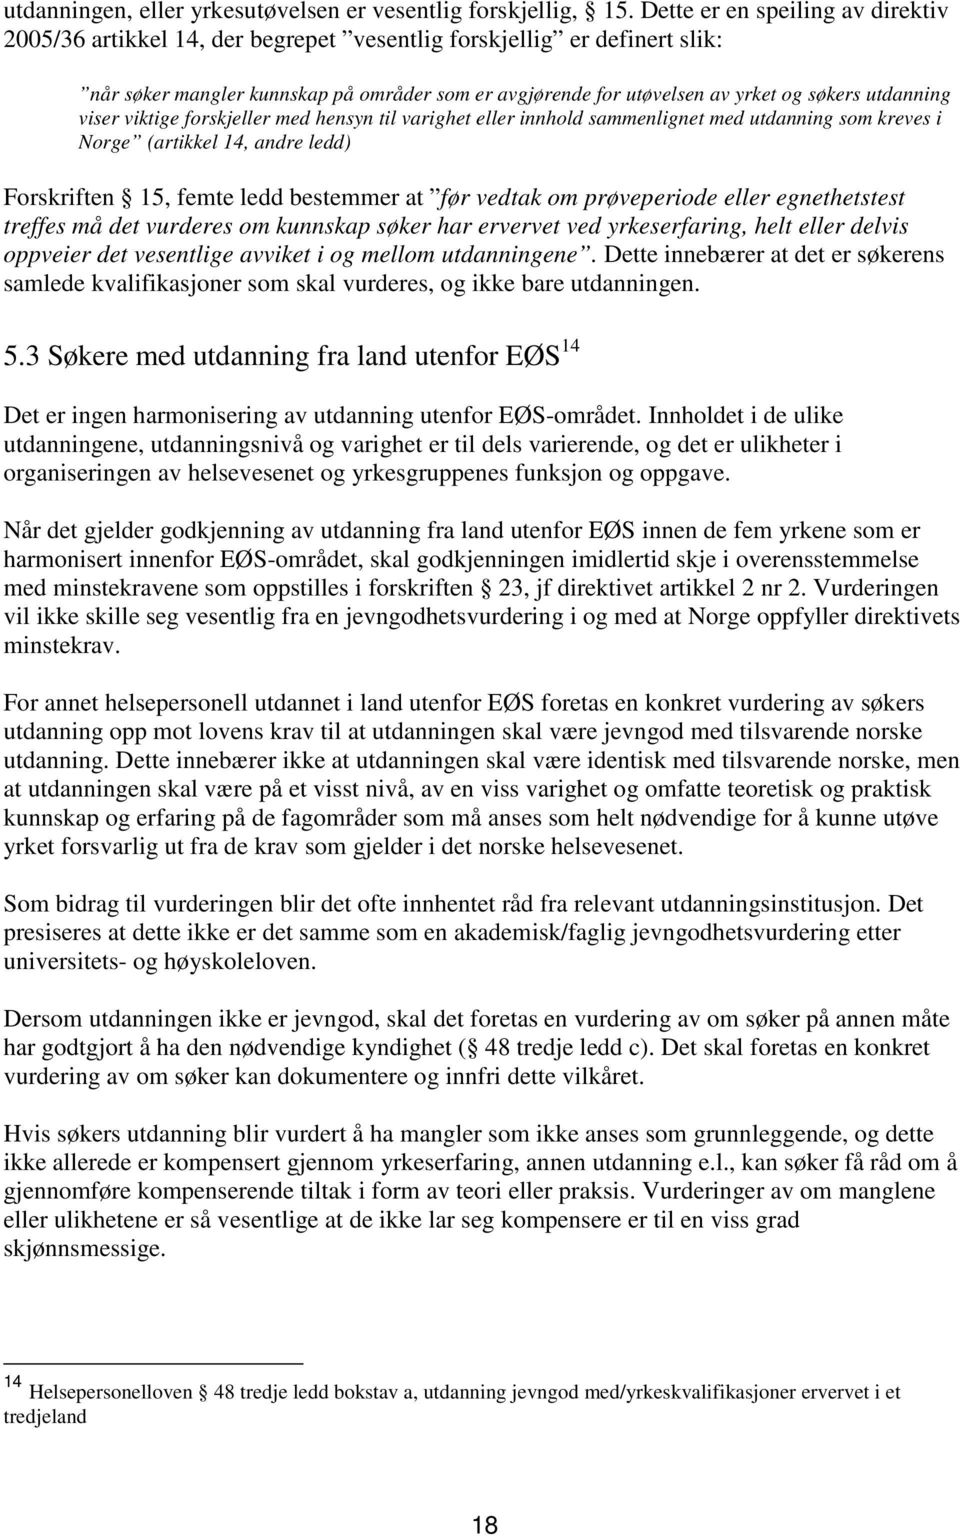 utdanning viser viktige forskjeller med hensyn til varighet eller innhold sammenlignet med utdanning som kreves i Norge (artikkel 14, andre ledd) Forskriften 15, femte ledd bestemmer at før vedtak om